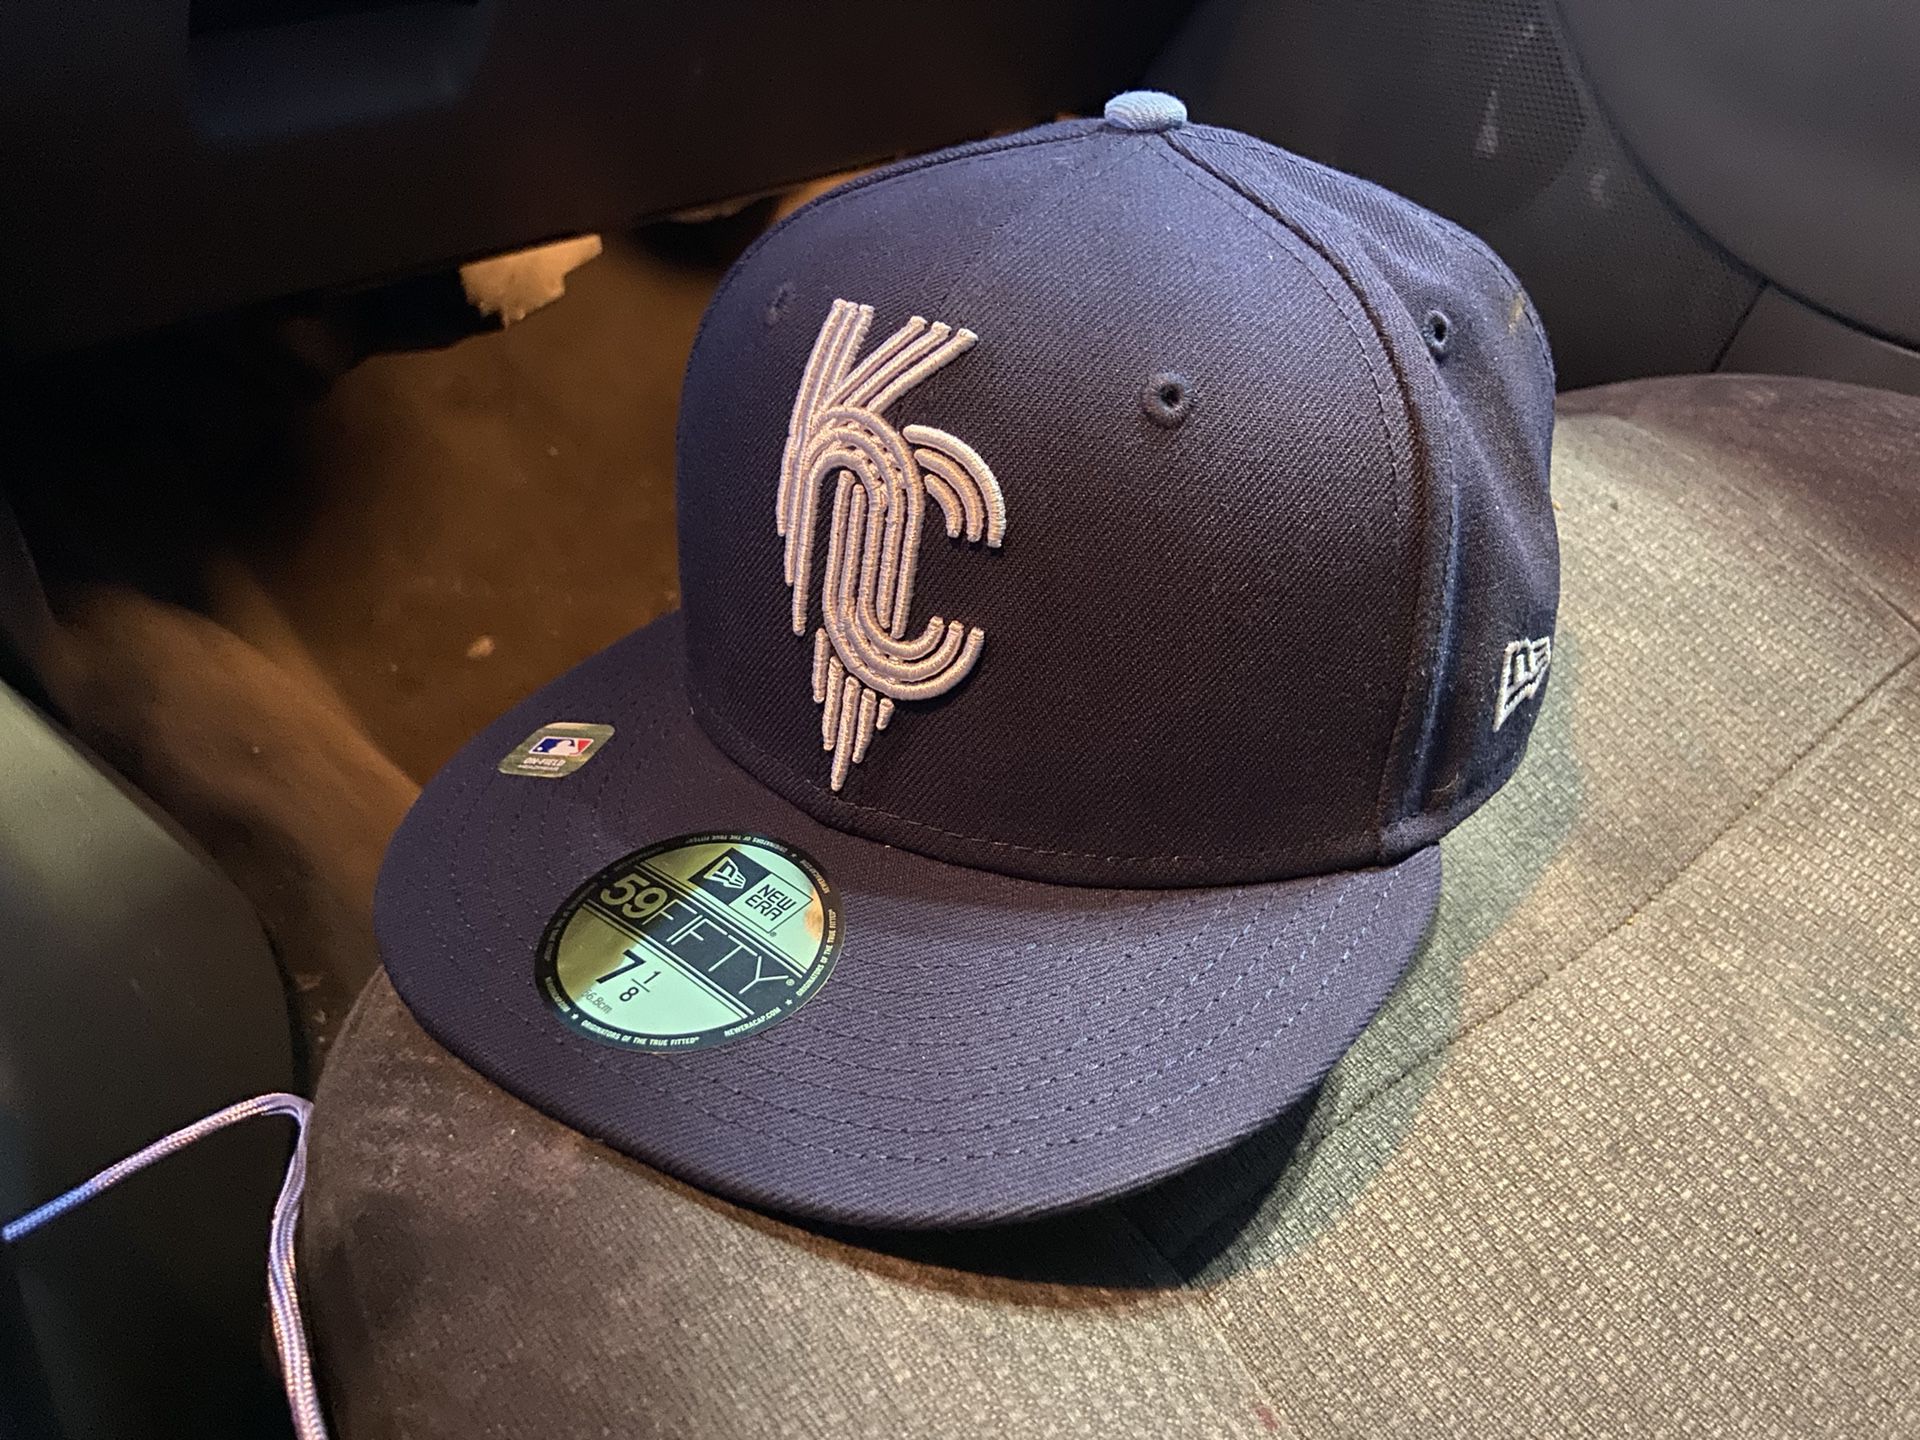 kc royals connect hat